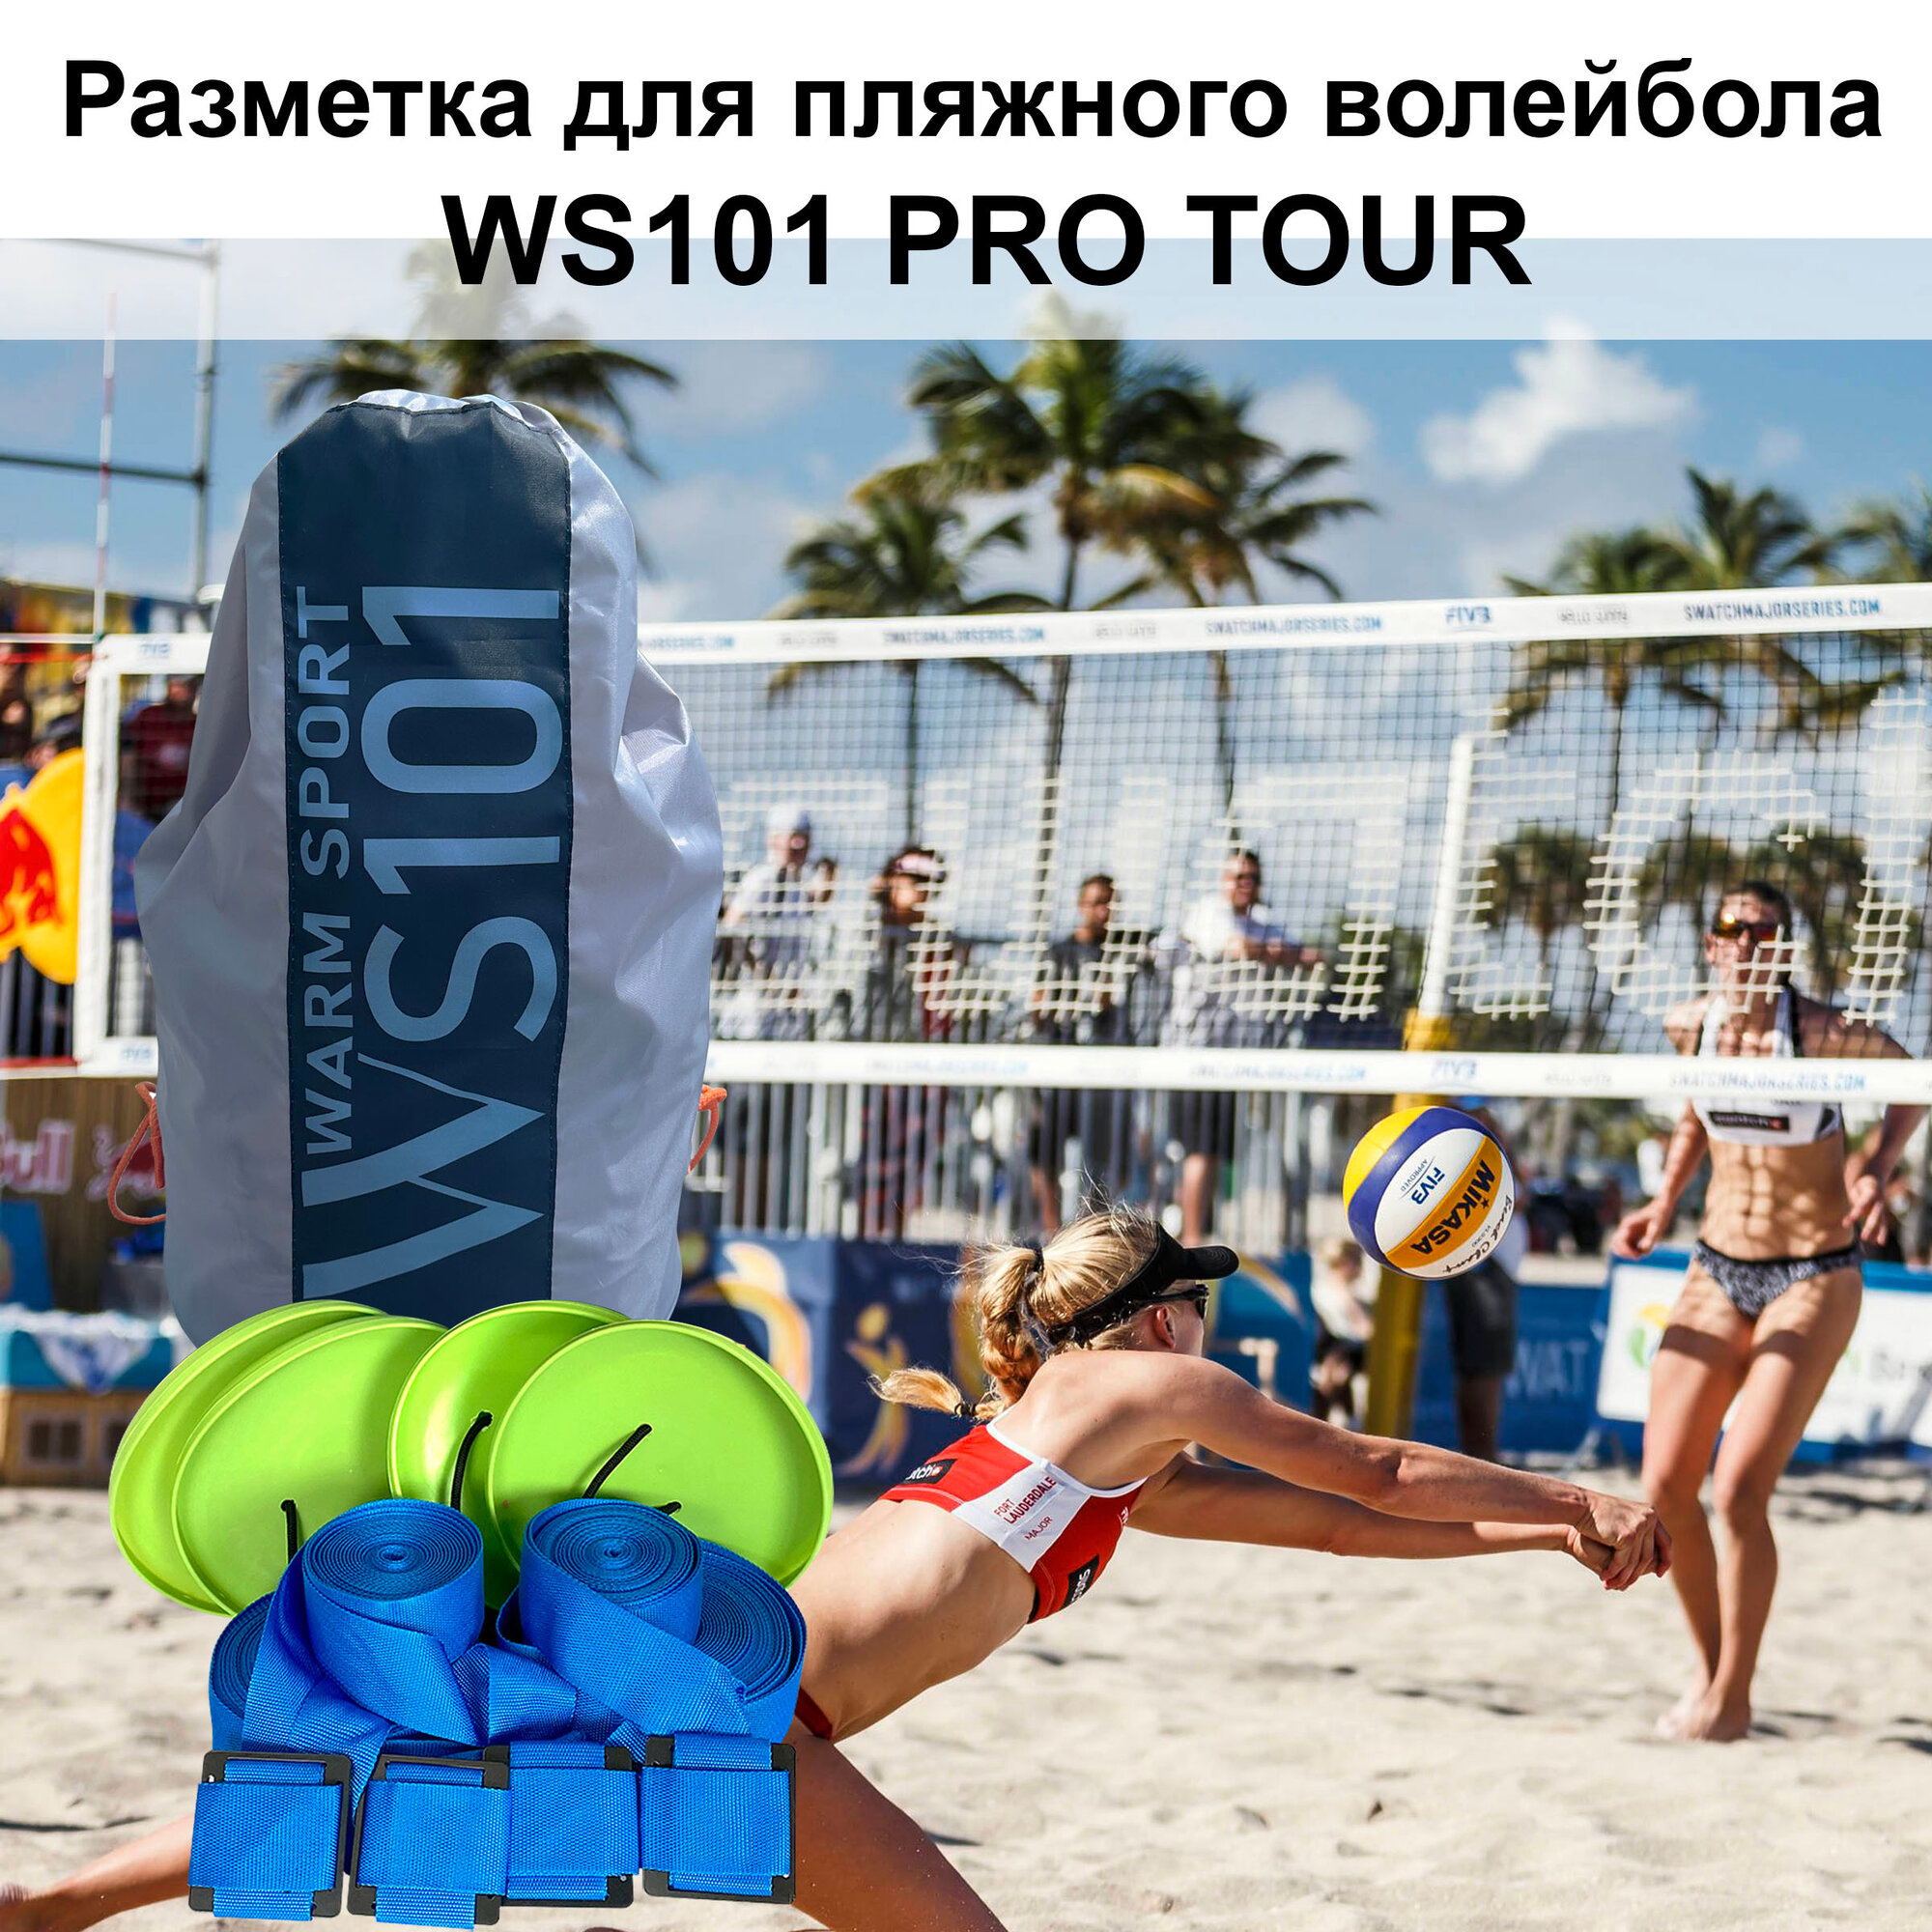 Разметка для пляжного волейбола WS101 Pro Tour 2.0(синяя) (KV.REZAC rus)